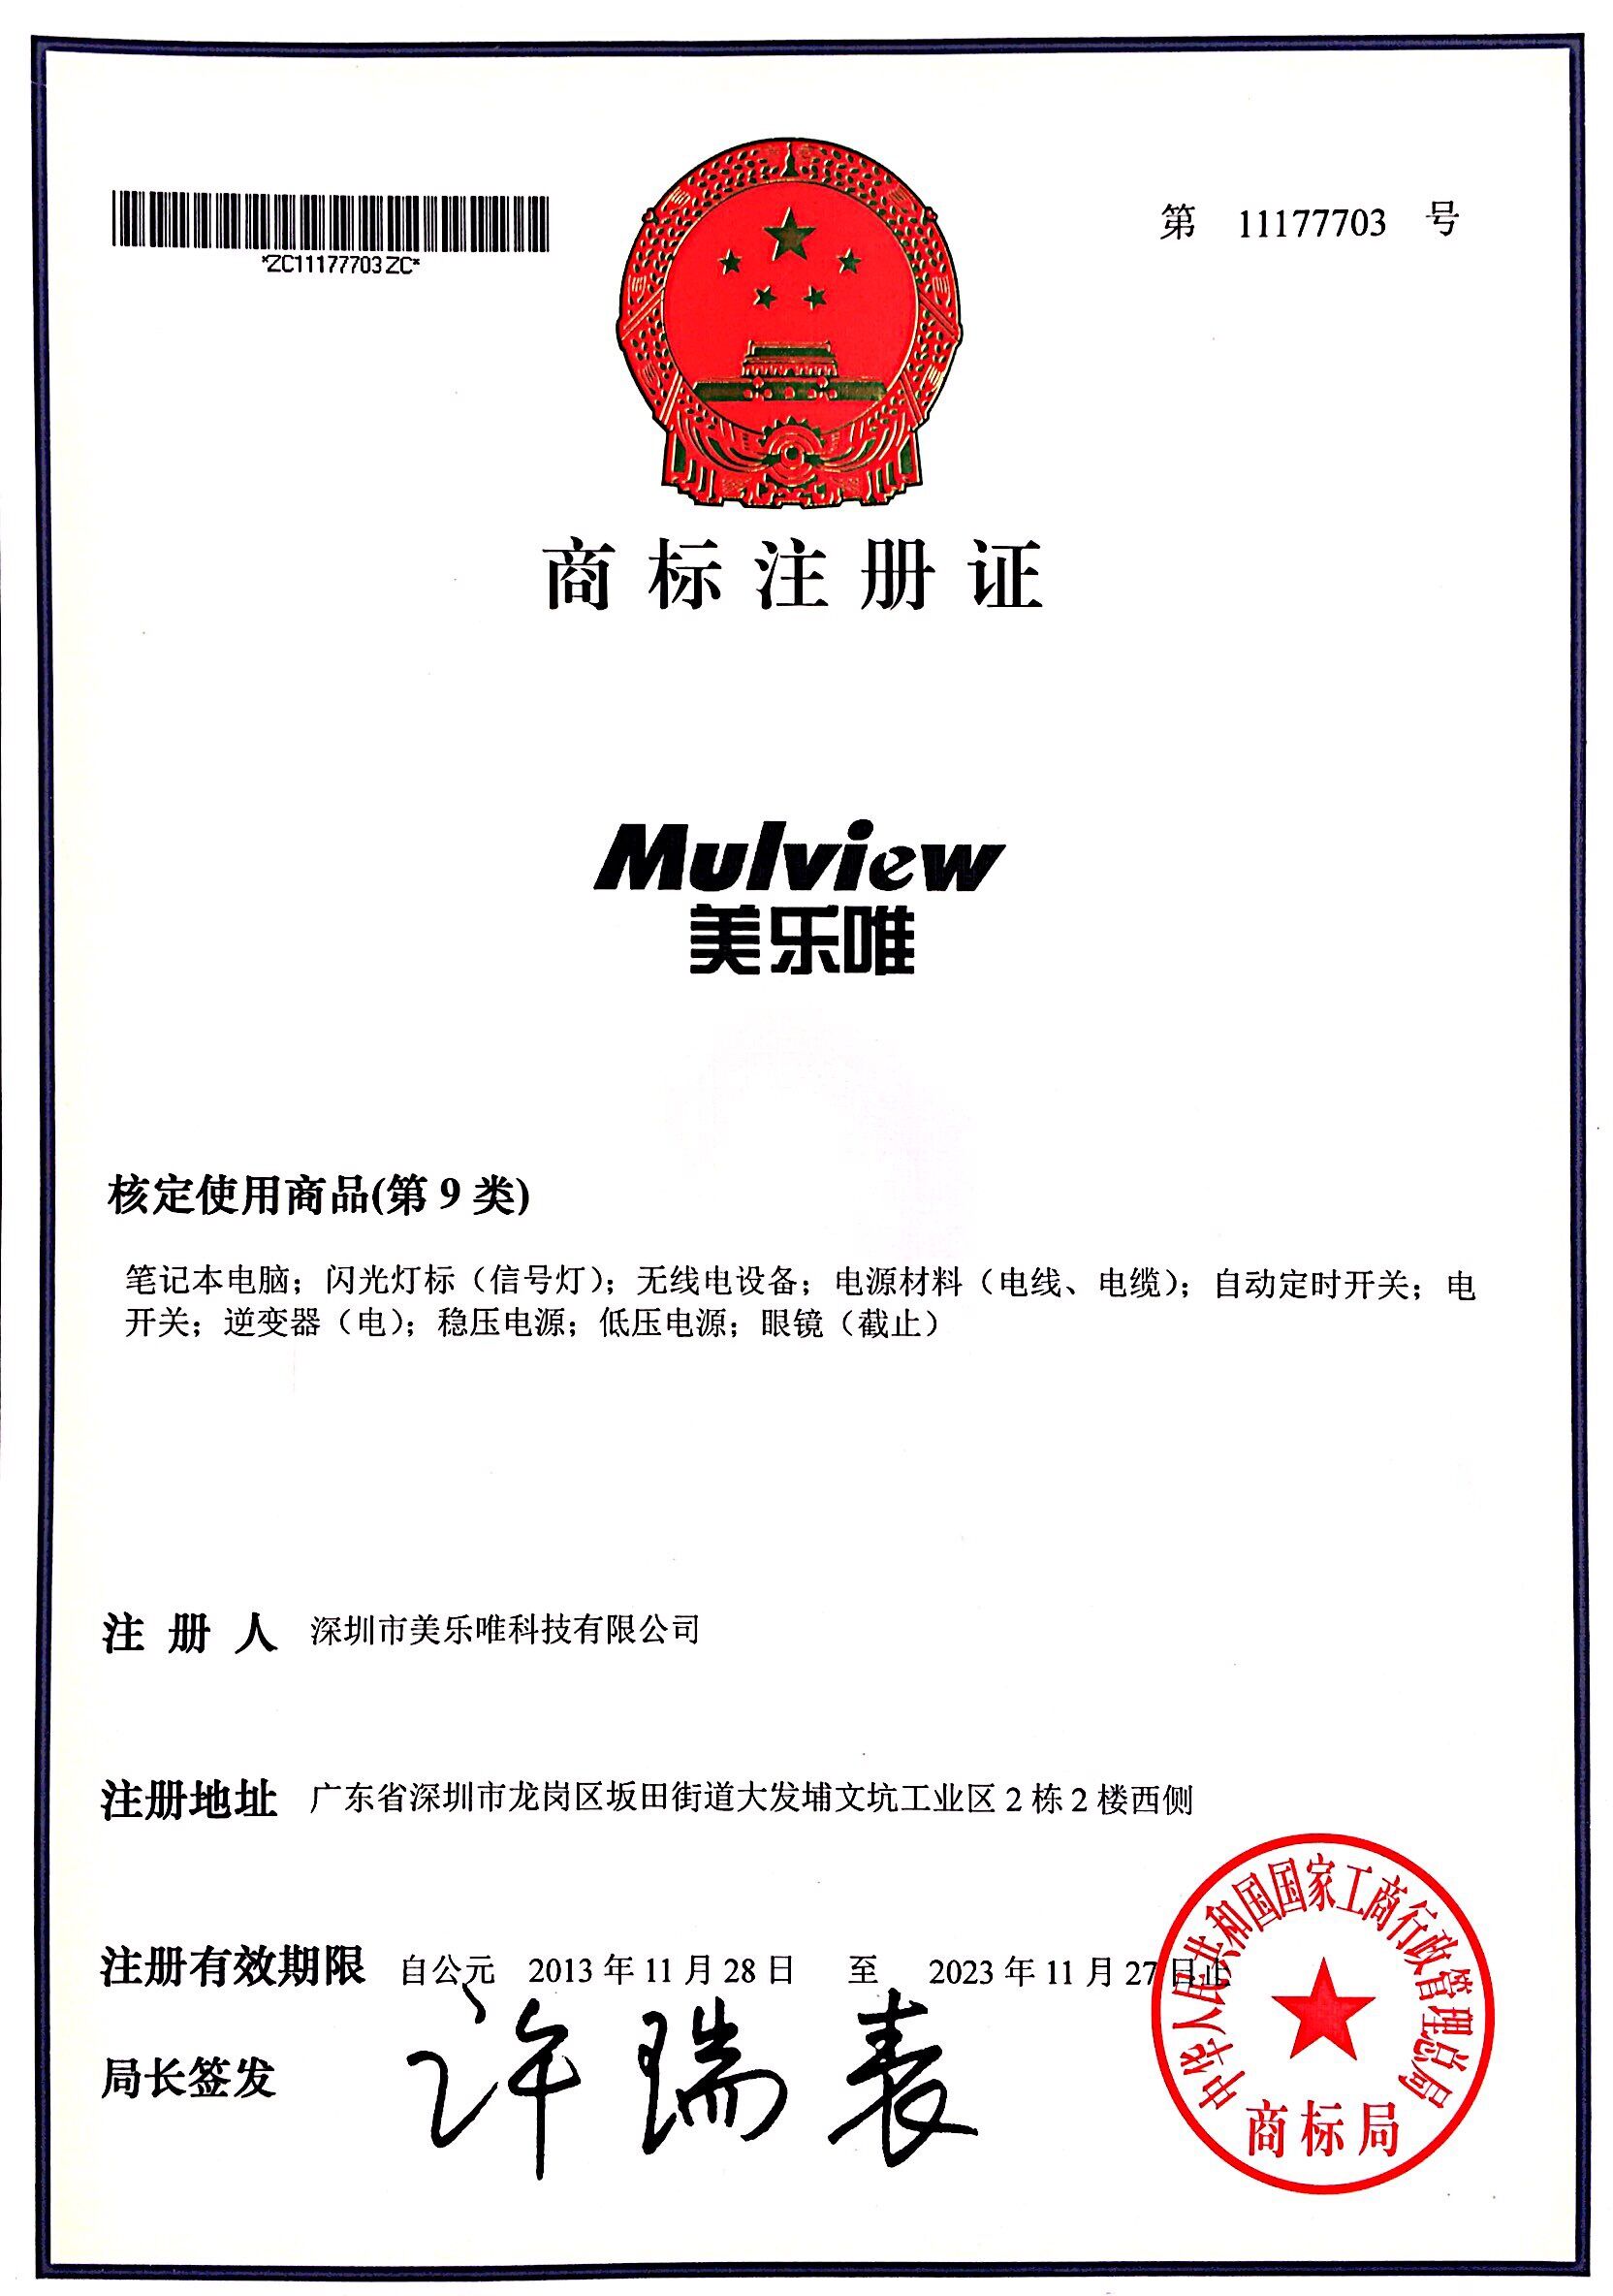 mulview power supply Trademark